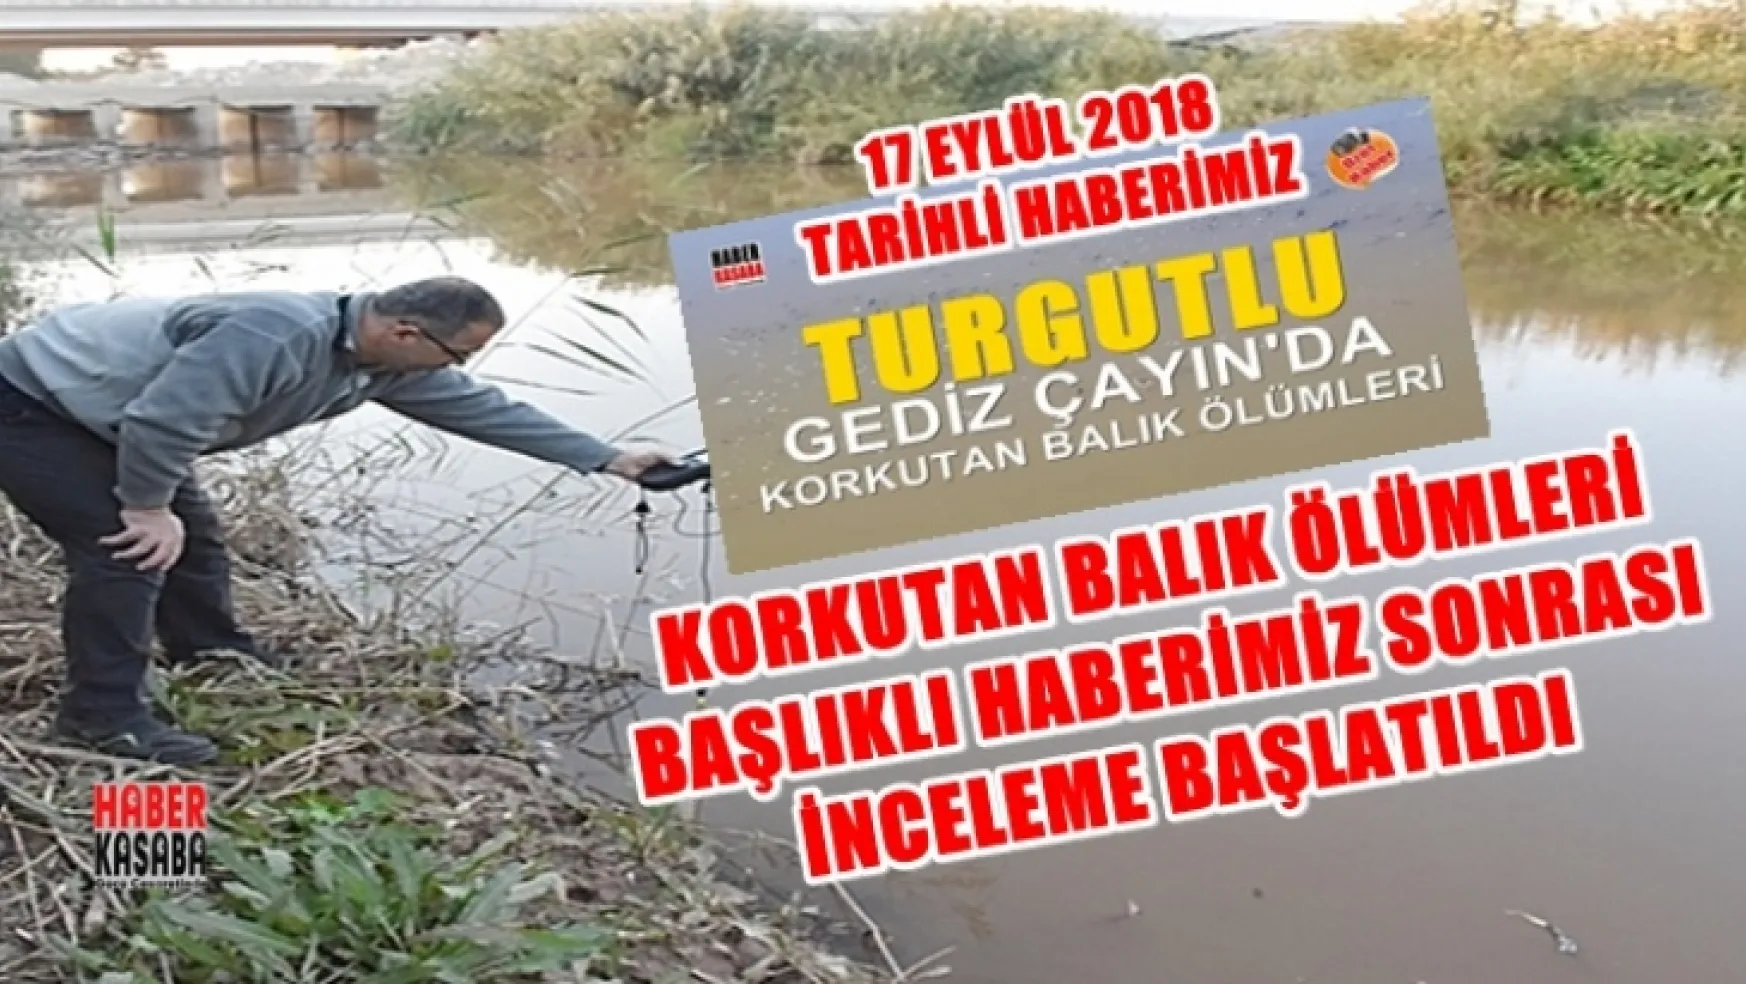 Haberimiz Ses Getirdi Turgutlu'da ki Balık Ölümleri İncelemeye alındı